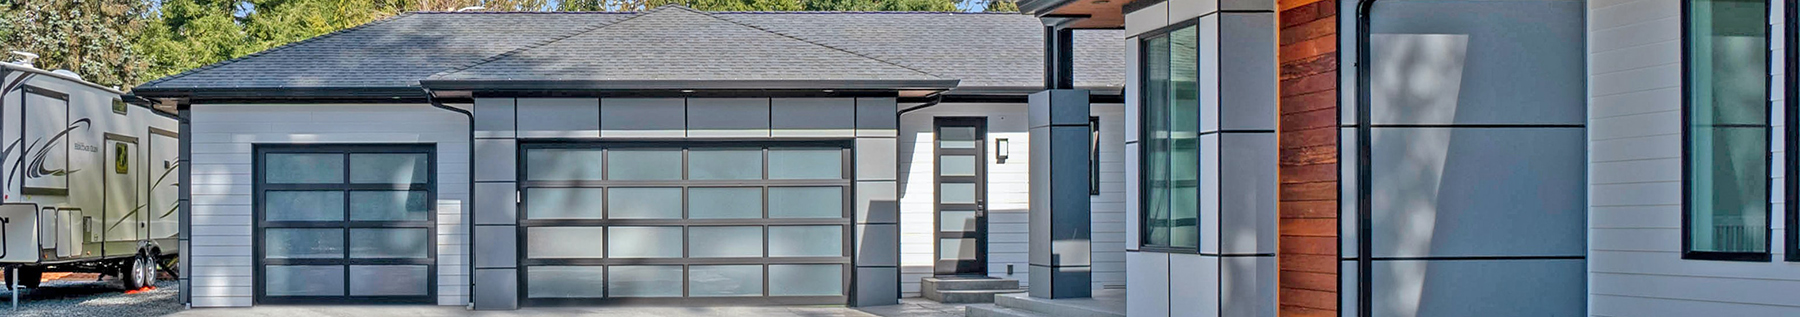 image of garage doors